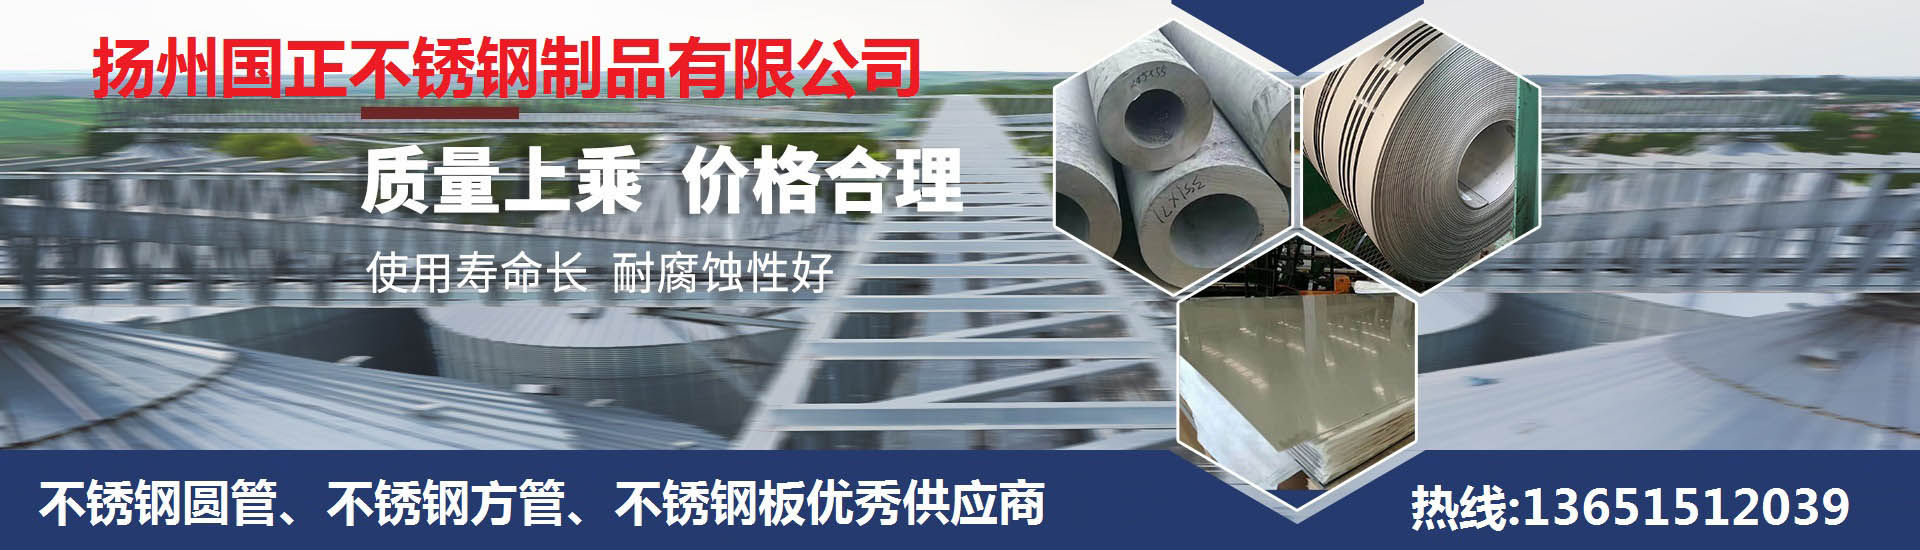 扬州国正不锈钢制品有限公司